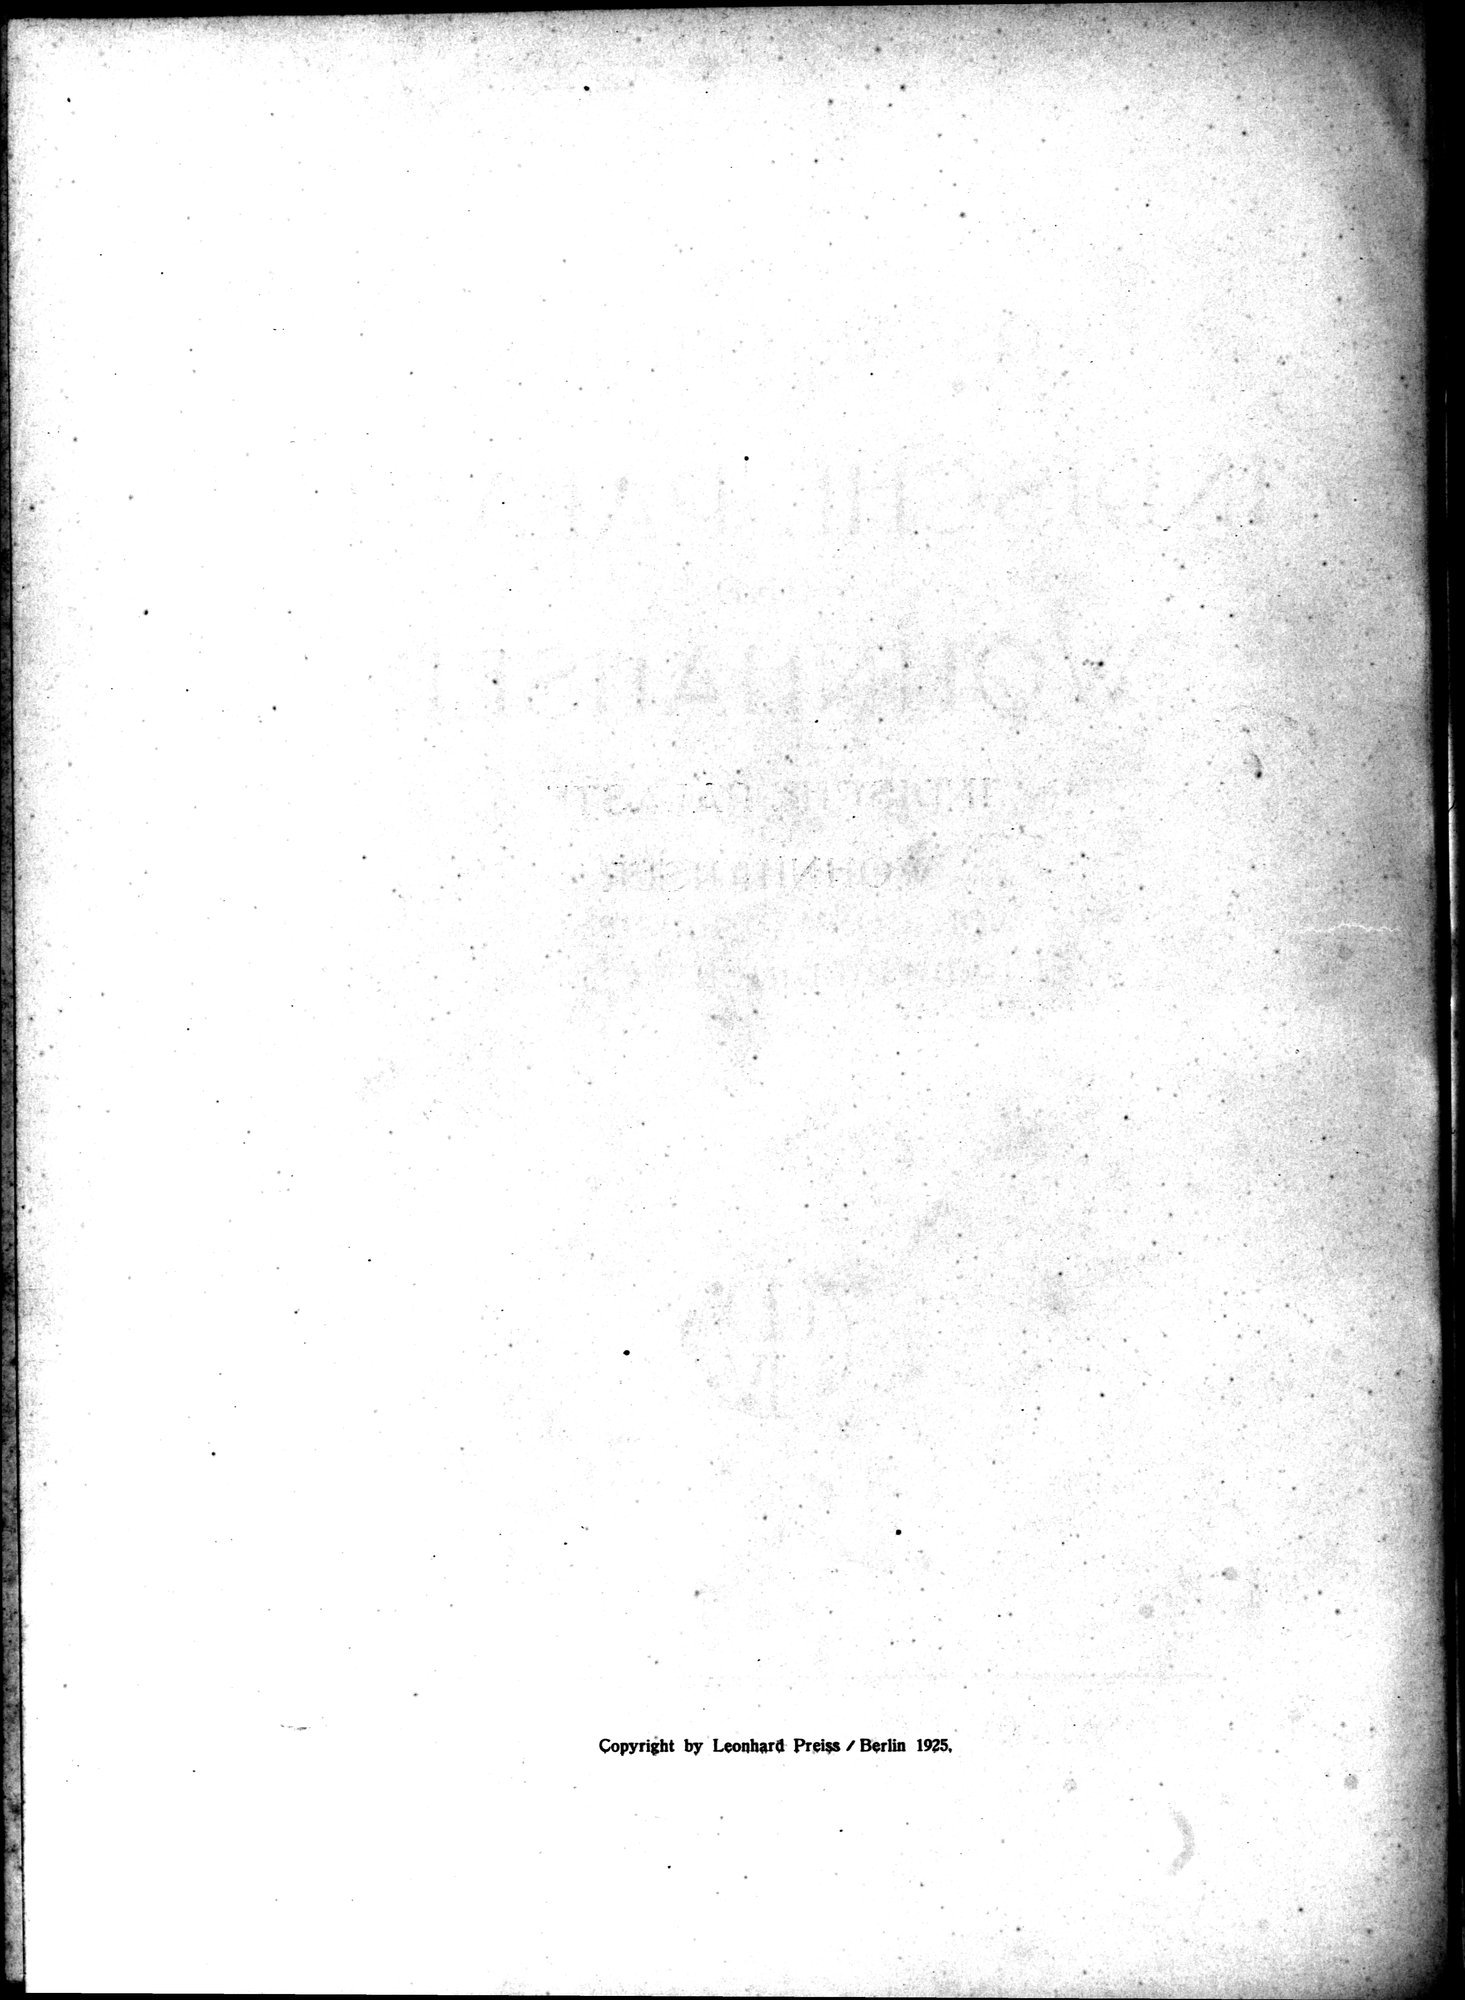 Indische Palaste und Wohnhauser : vol.1 / Page 6 (Grayscale High Resolution Image)